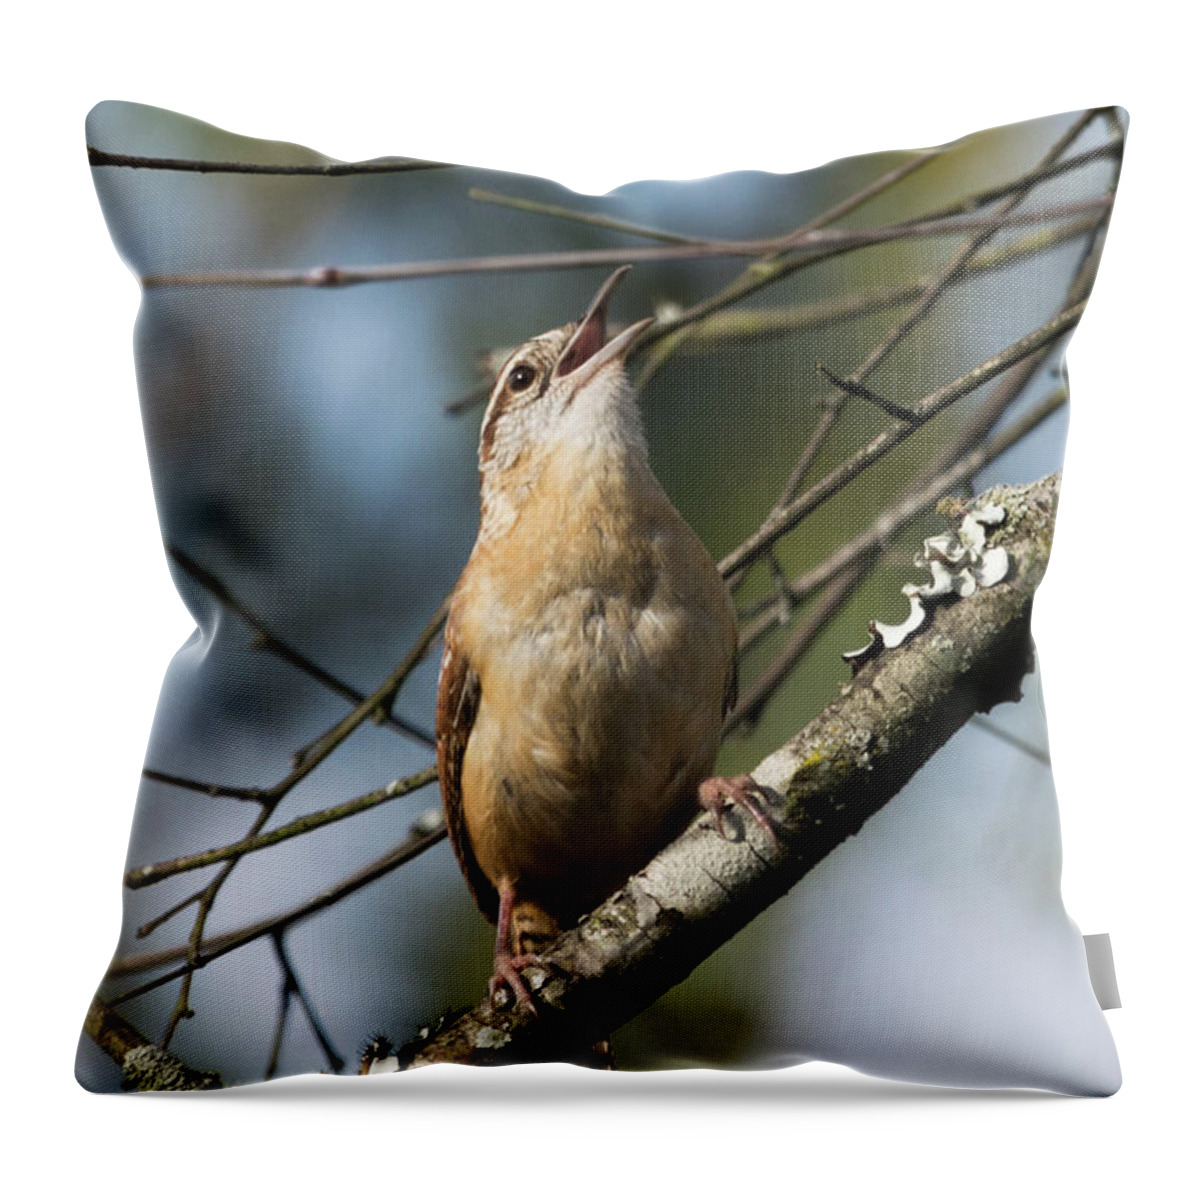 Bird Throw Pillow featuring the photograph Bobolink Singing by John Benedict